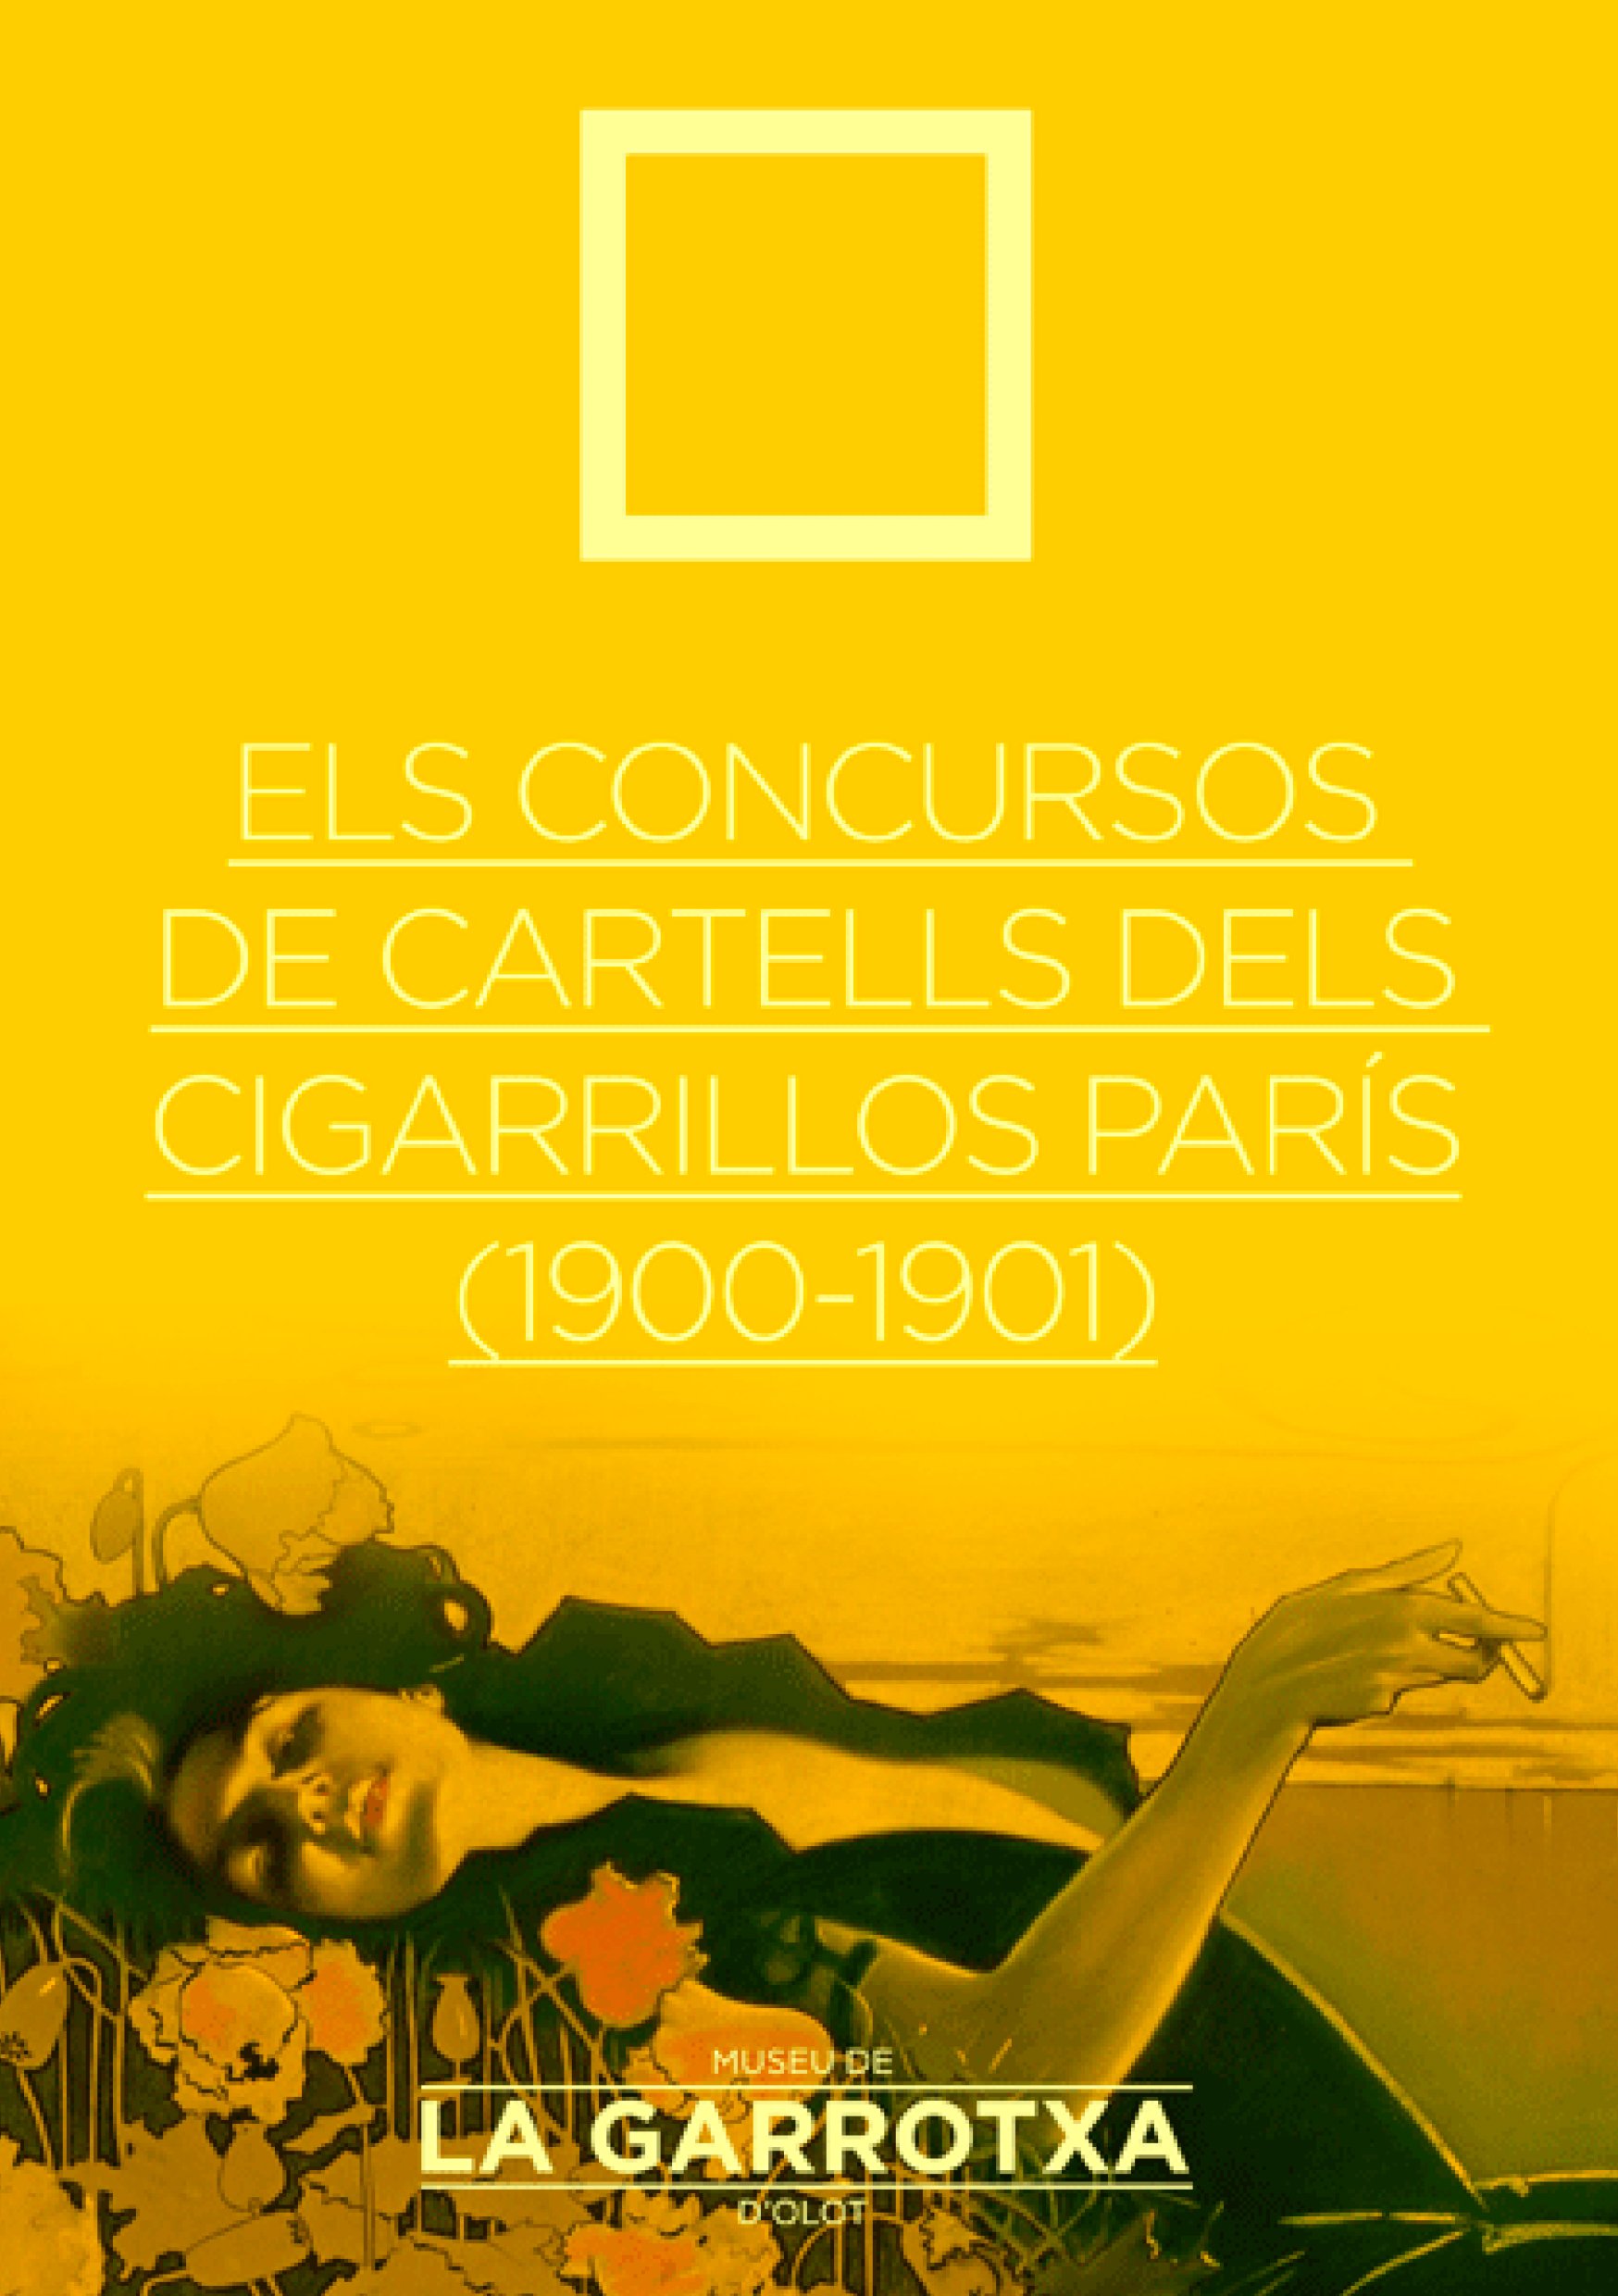 Portada del catàleg de Cigarrillos París.